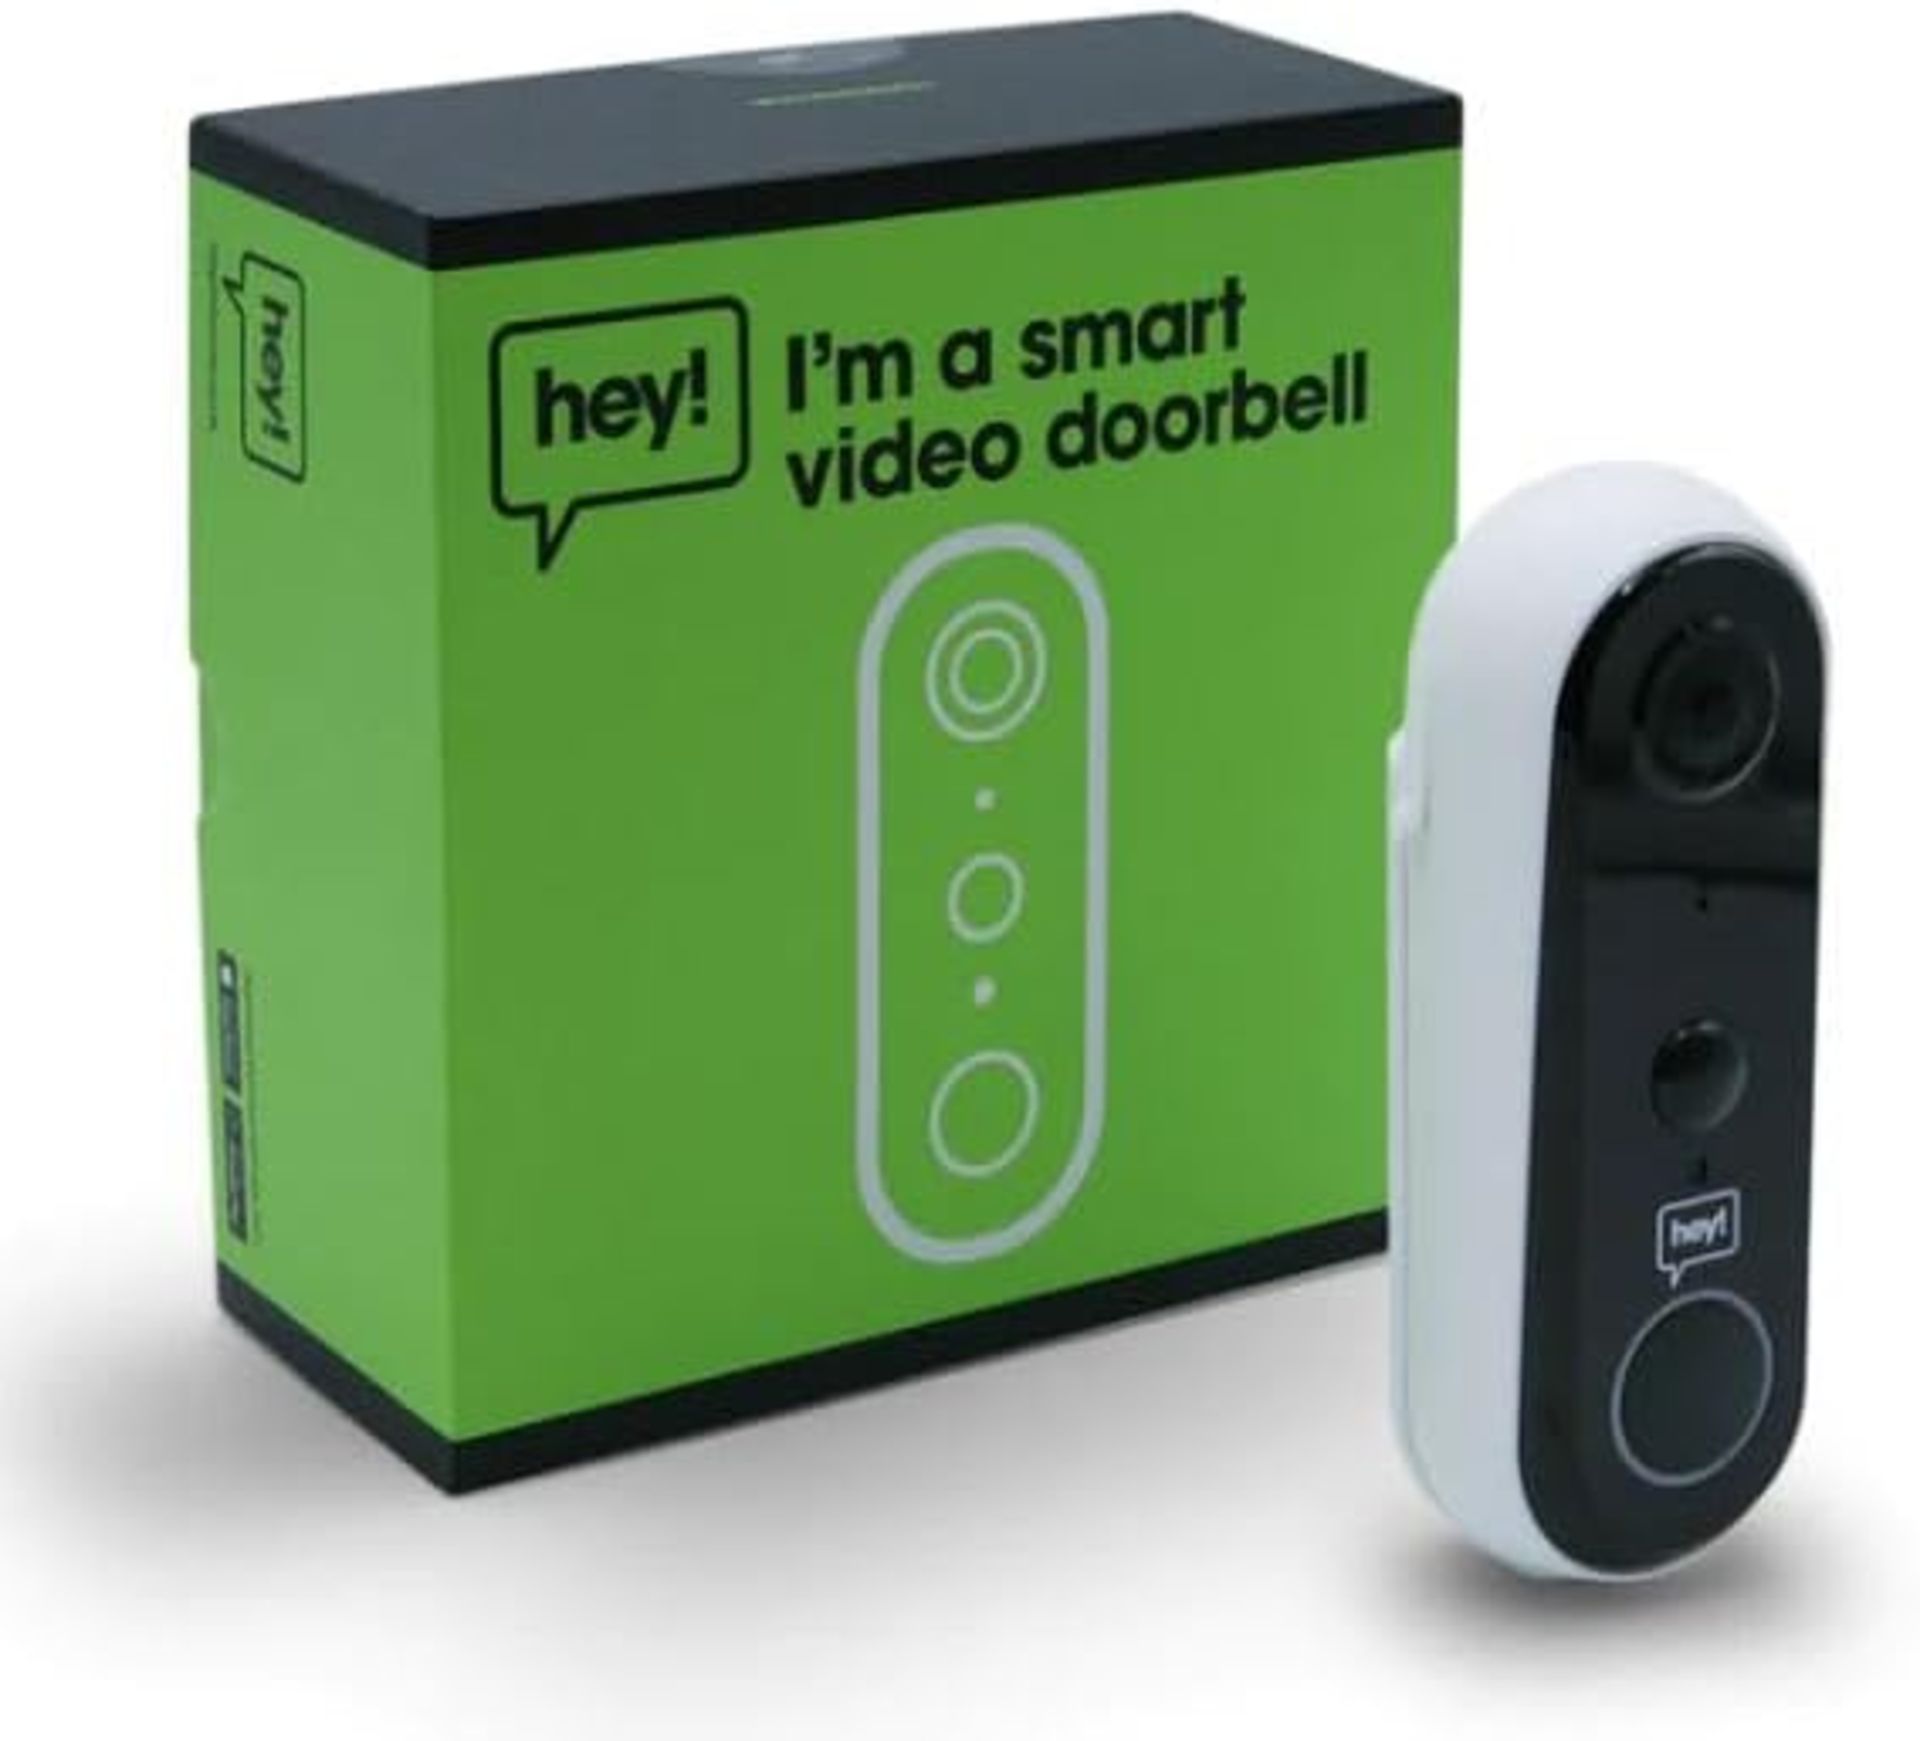 3x NEW & BOXED HEY! SMART Wireless Video Doorbell. RRP £79.99 EACH. Wifi Doorbell Security Camera